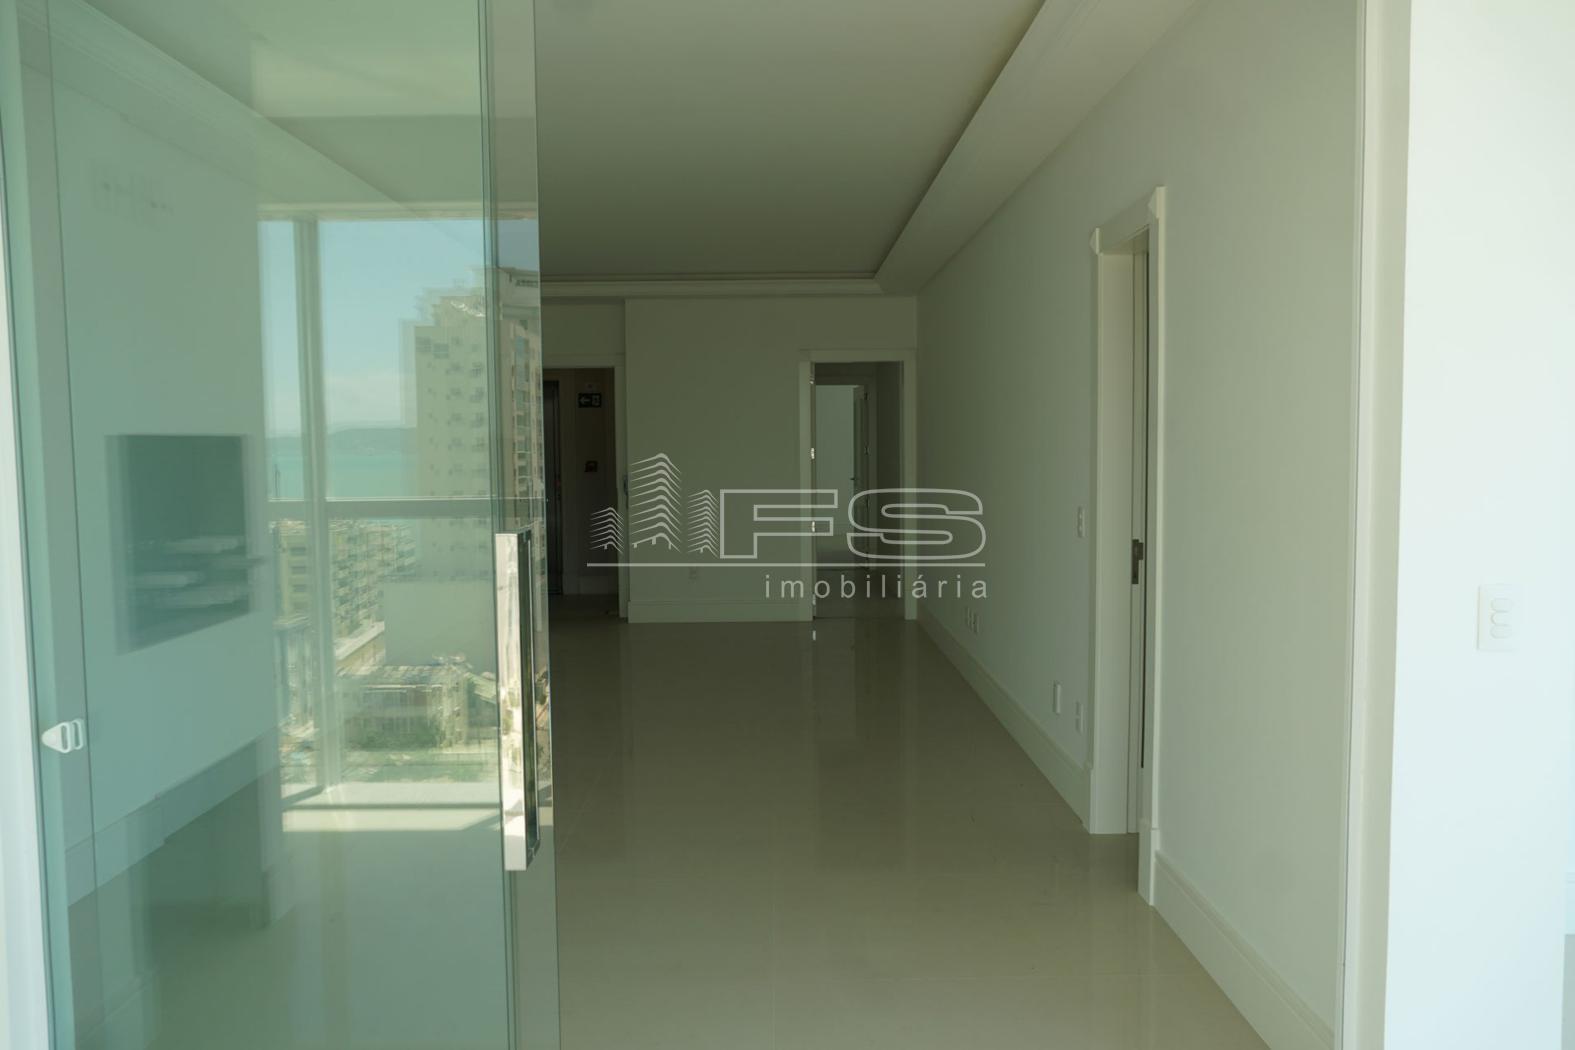 Apartamento com 3 Dormitórios à venda, 140 m² por R$ 1.650.000,00